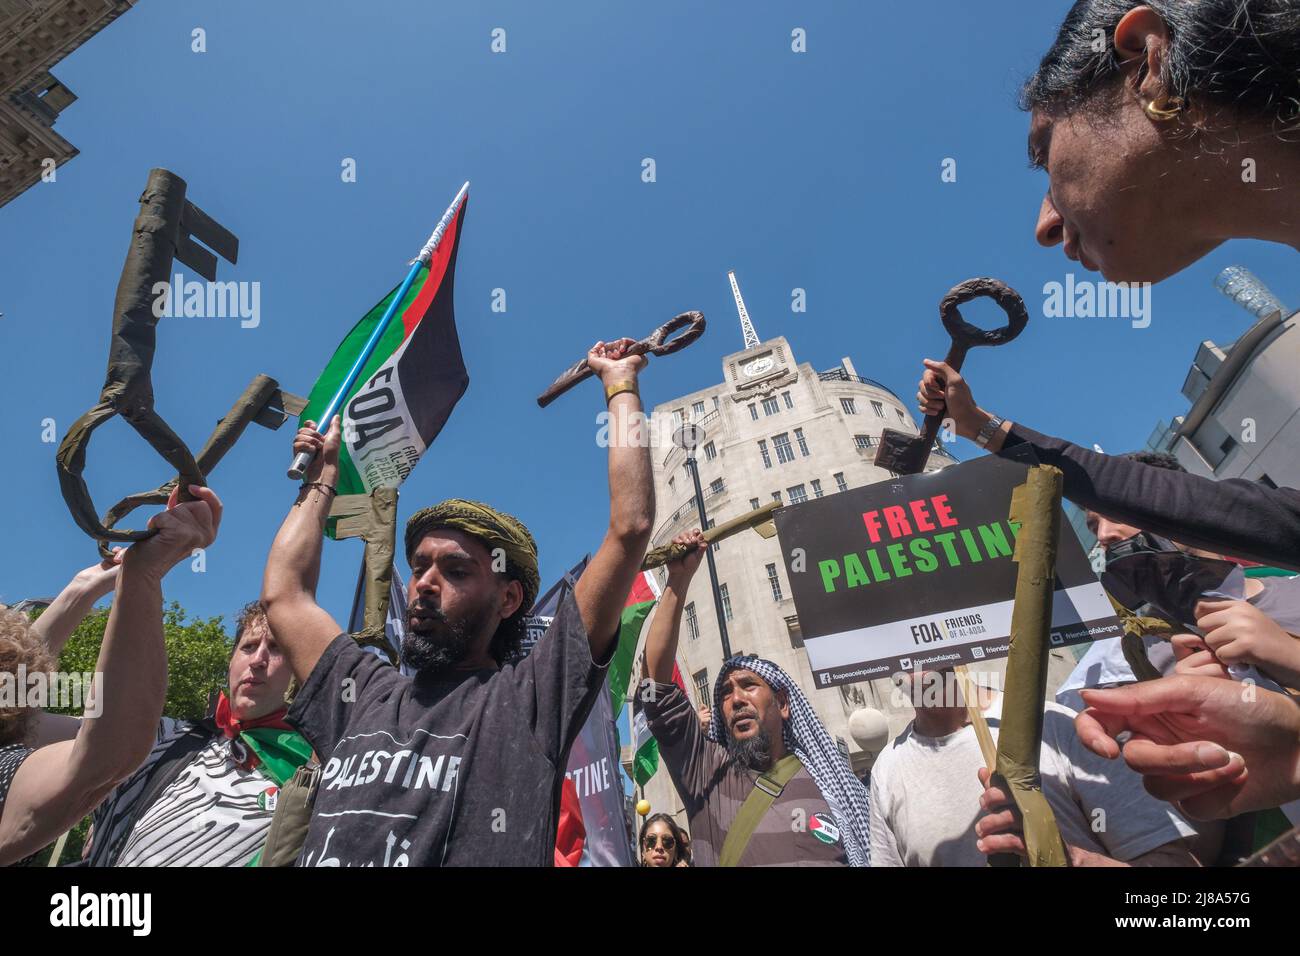 Londres, Royaume-Uni. 14 mai 2022. Les clés symbolisent le retour des Palestiniens dans les foyers volés. Les gens marchent de la BBC à un rassemblement à Downing St contre 74 ans de violations croissantes des droits de l'homme d'Israël contre les Palestiniens depuis plus de 750 000 ont été déplacés de leurs foyers par les forces sionistes israéliennes. La situation en Israël est maintenant largement reconnue internationalement comme l'apartheid. Les marcheurs expriment leur choc face à l'attaque contre les porteurs de la paall lors des funérailles du journaliste Shireen Abu Akleh, abattu de sang froid par les forces israéliennes. Peter Marshall Alay Live News Banque D'Images